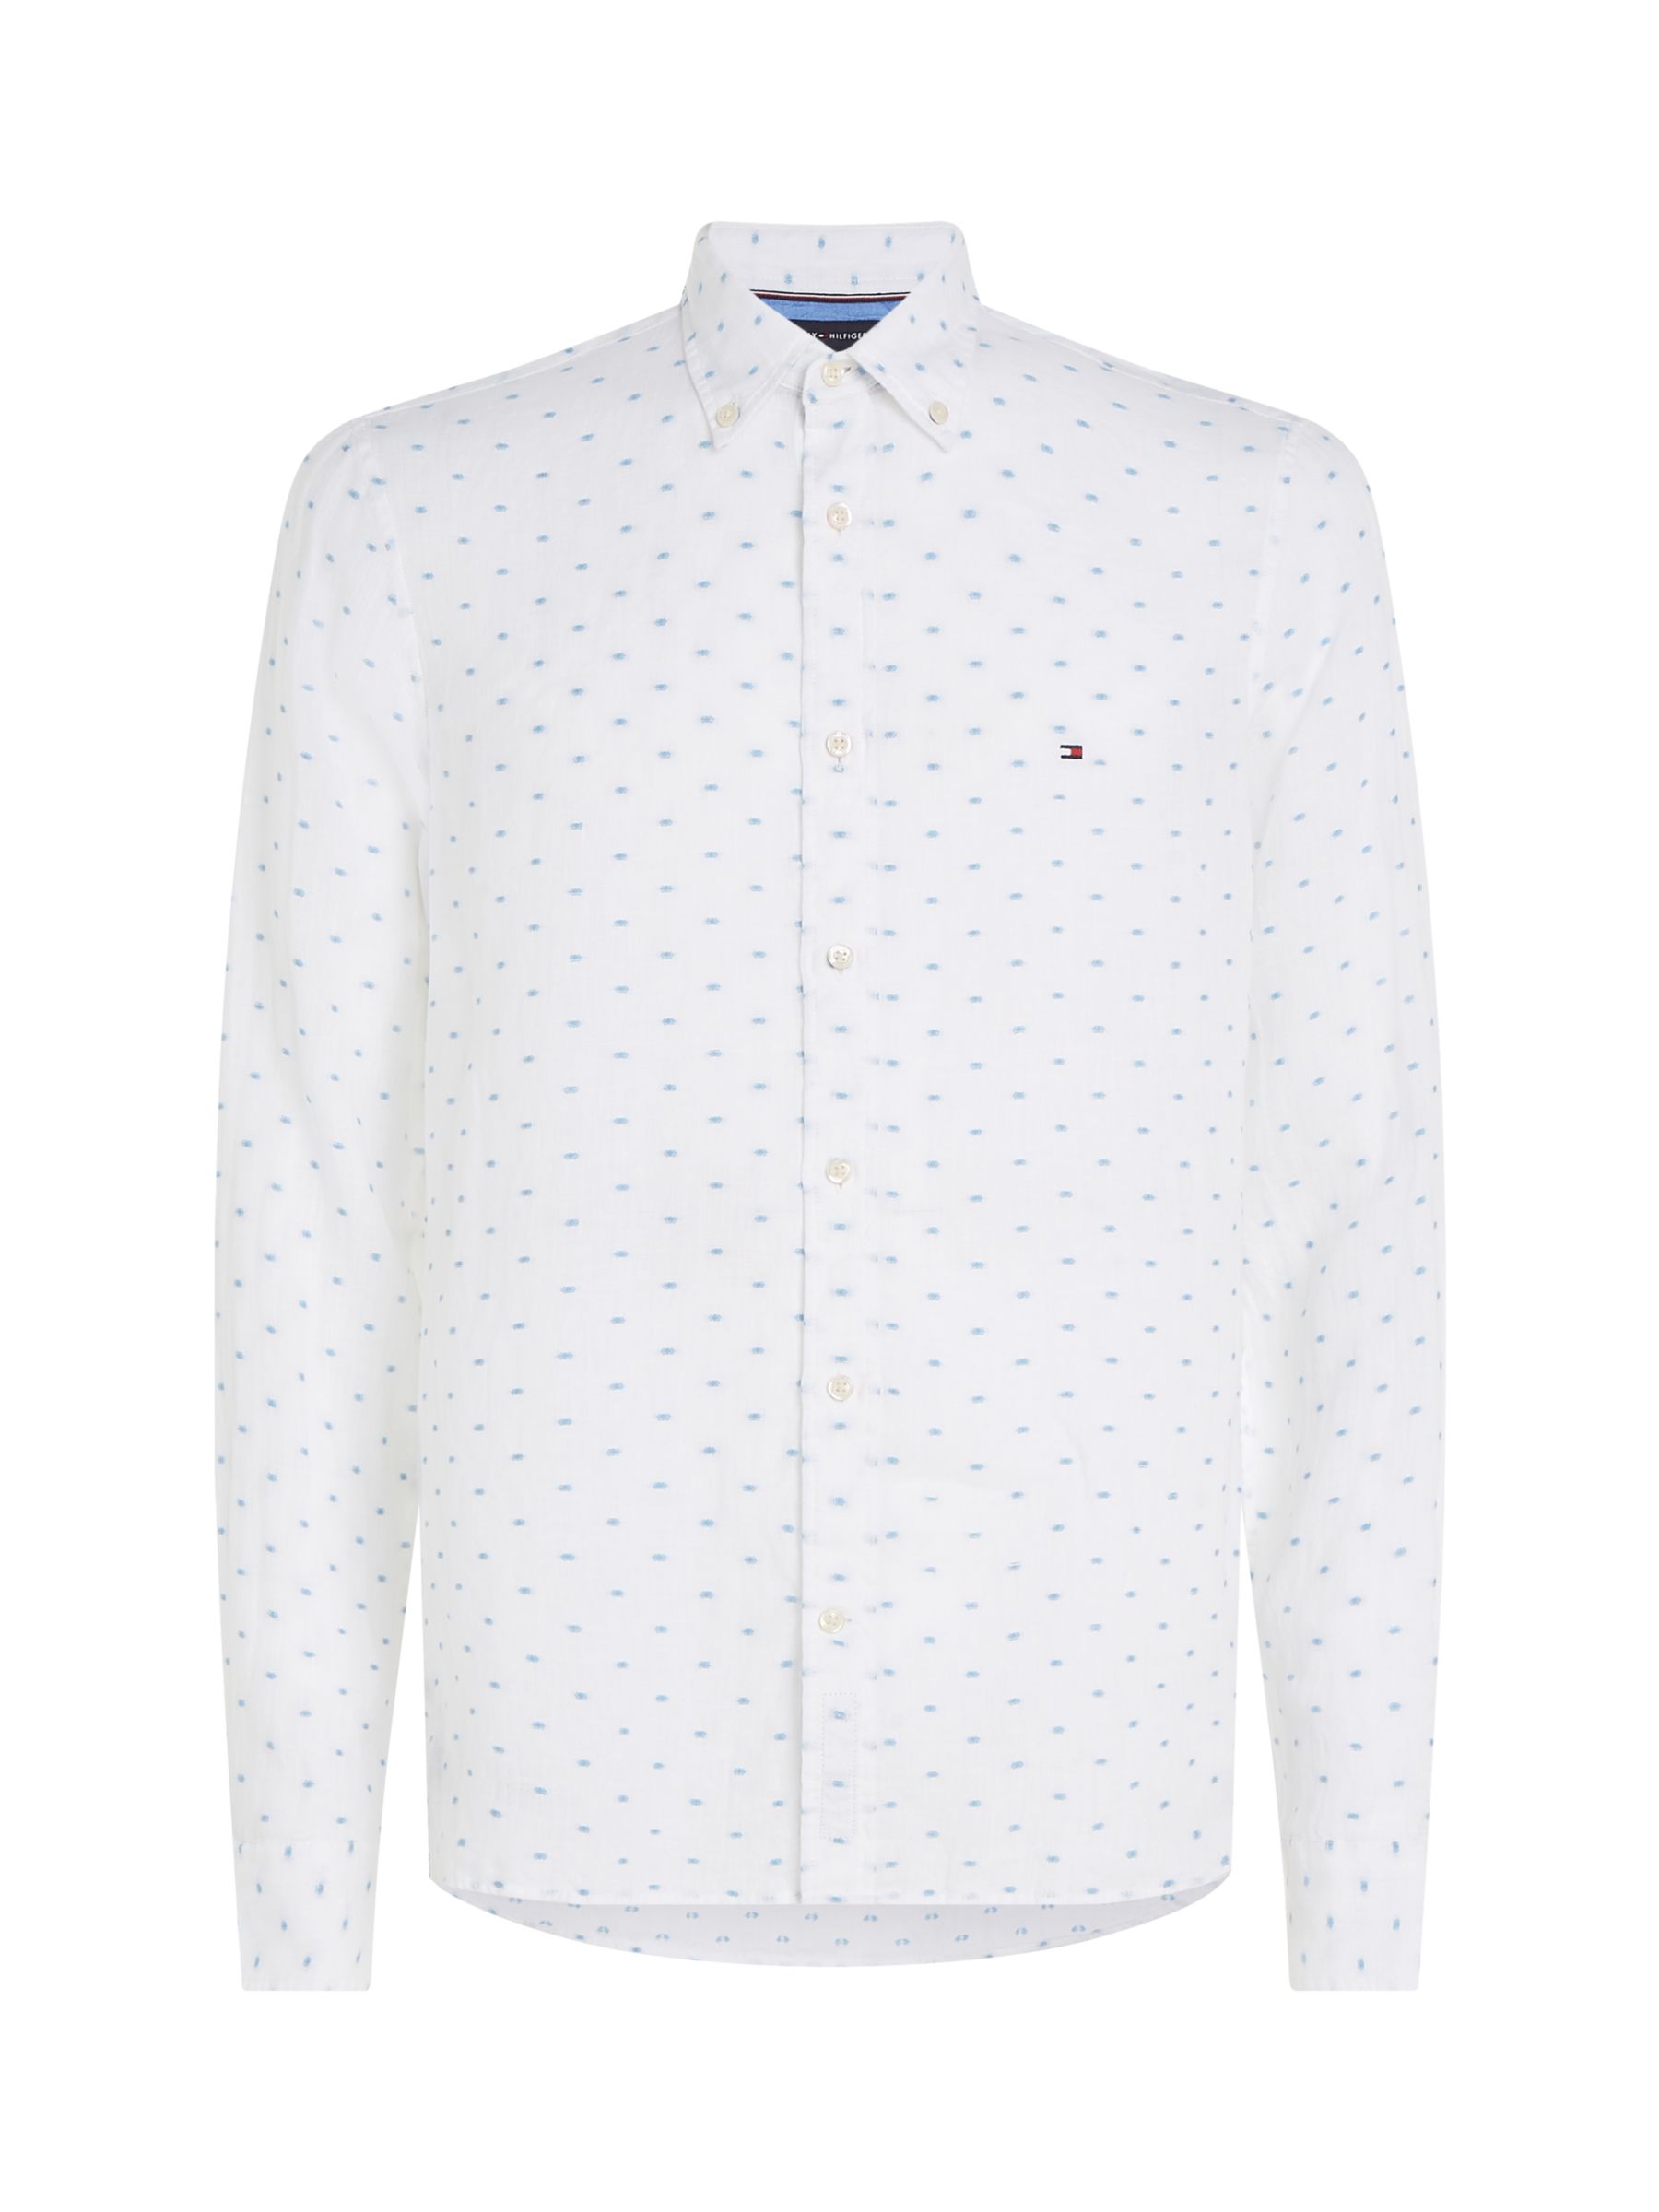 Tommy Hilfiger Linen Polka Dot Shirt, White, S